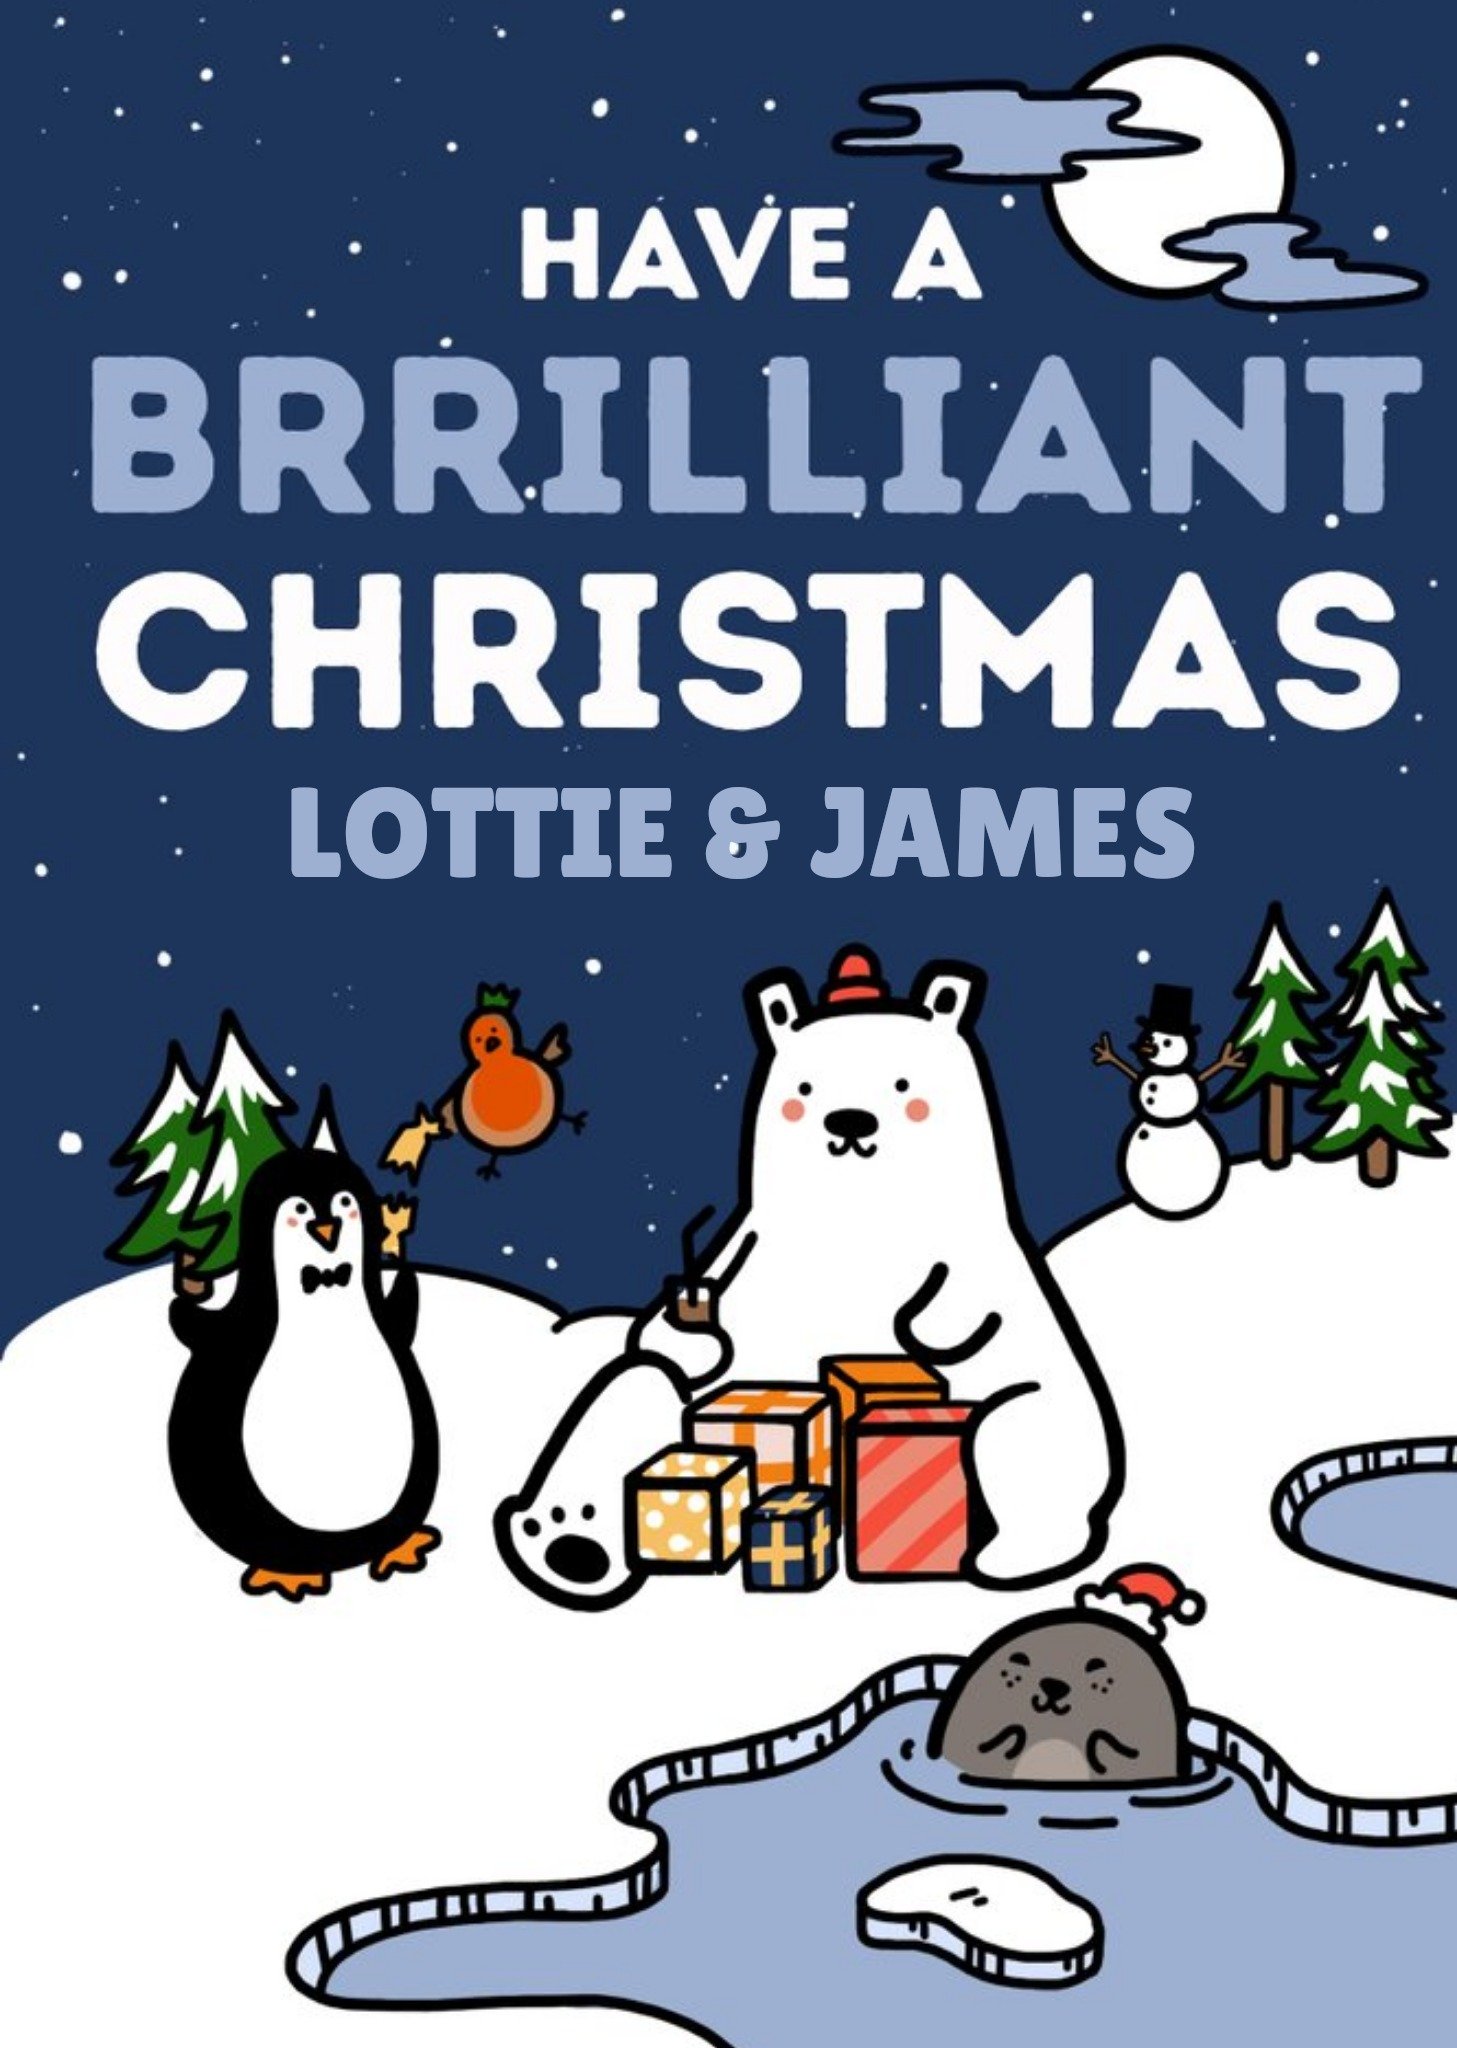 Moonpig Polar Bear And Penguin Brrrilliant Christmas Card Ecard